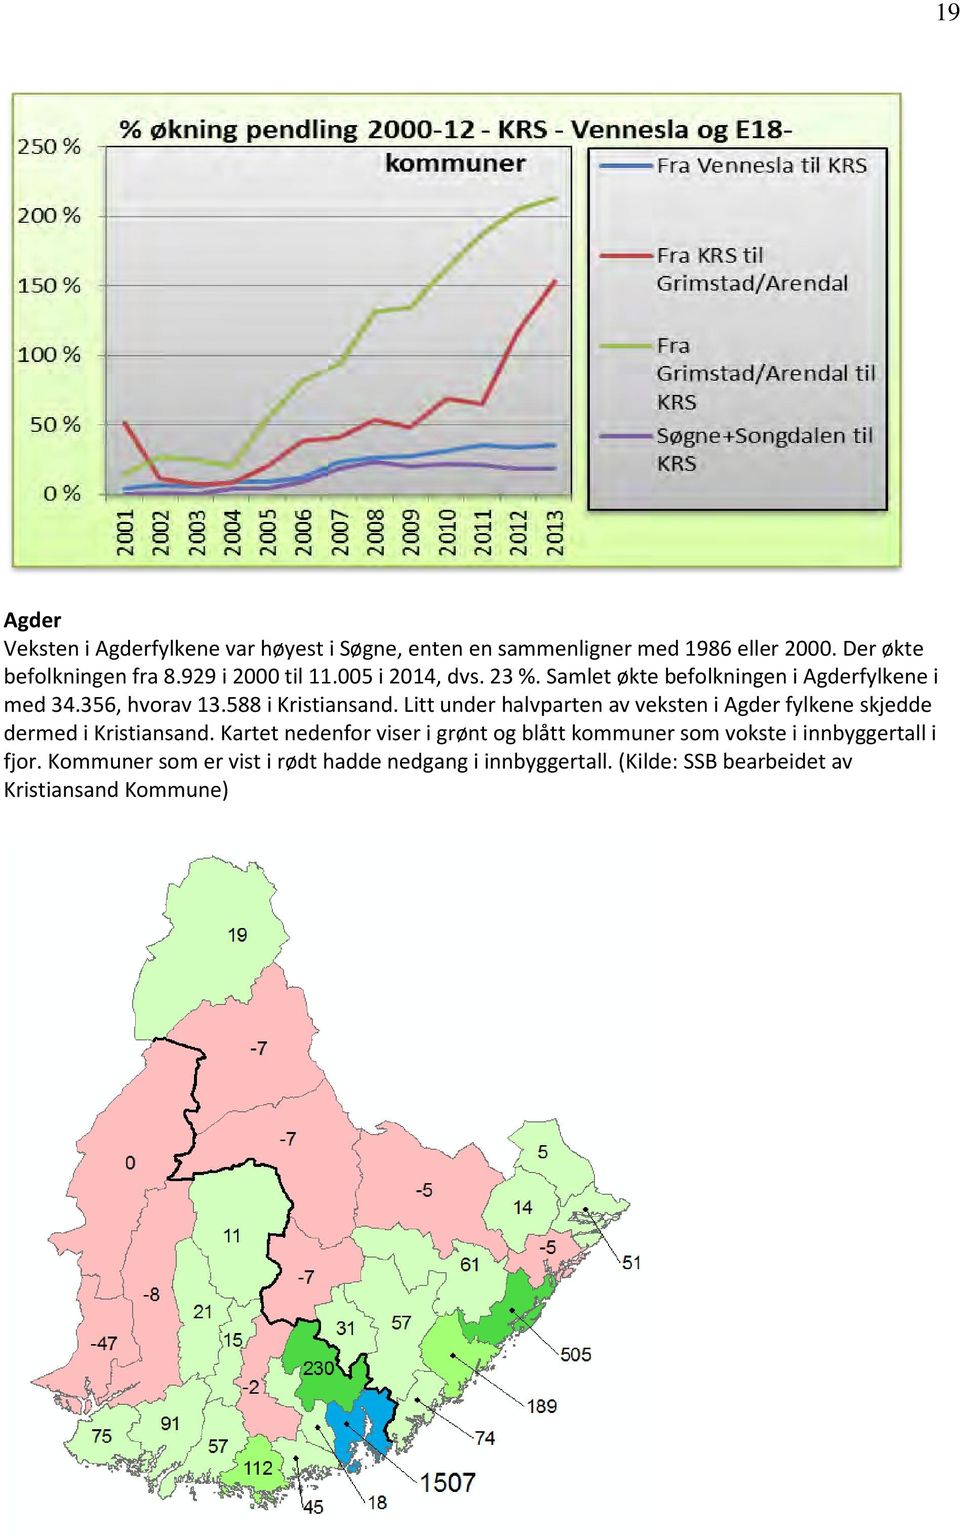 Litt under halvparten av veksten i Agder fylkene skjedde dermed i Kristiansand.